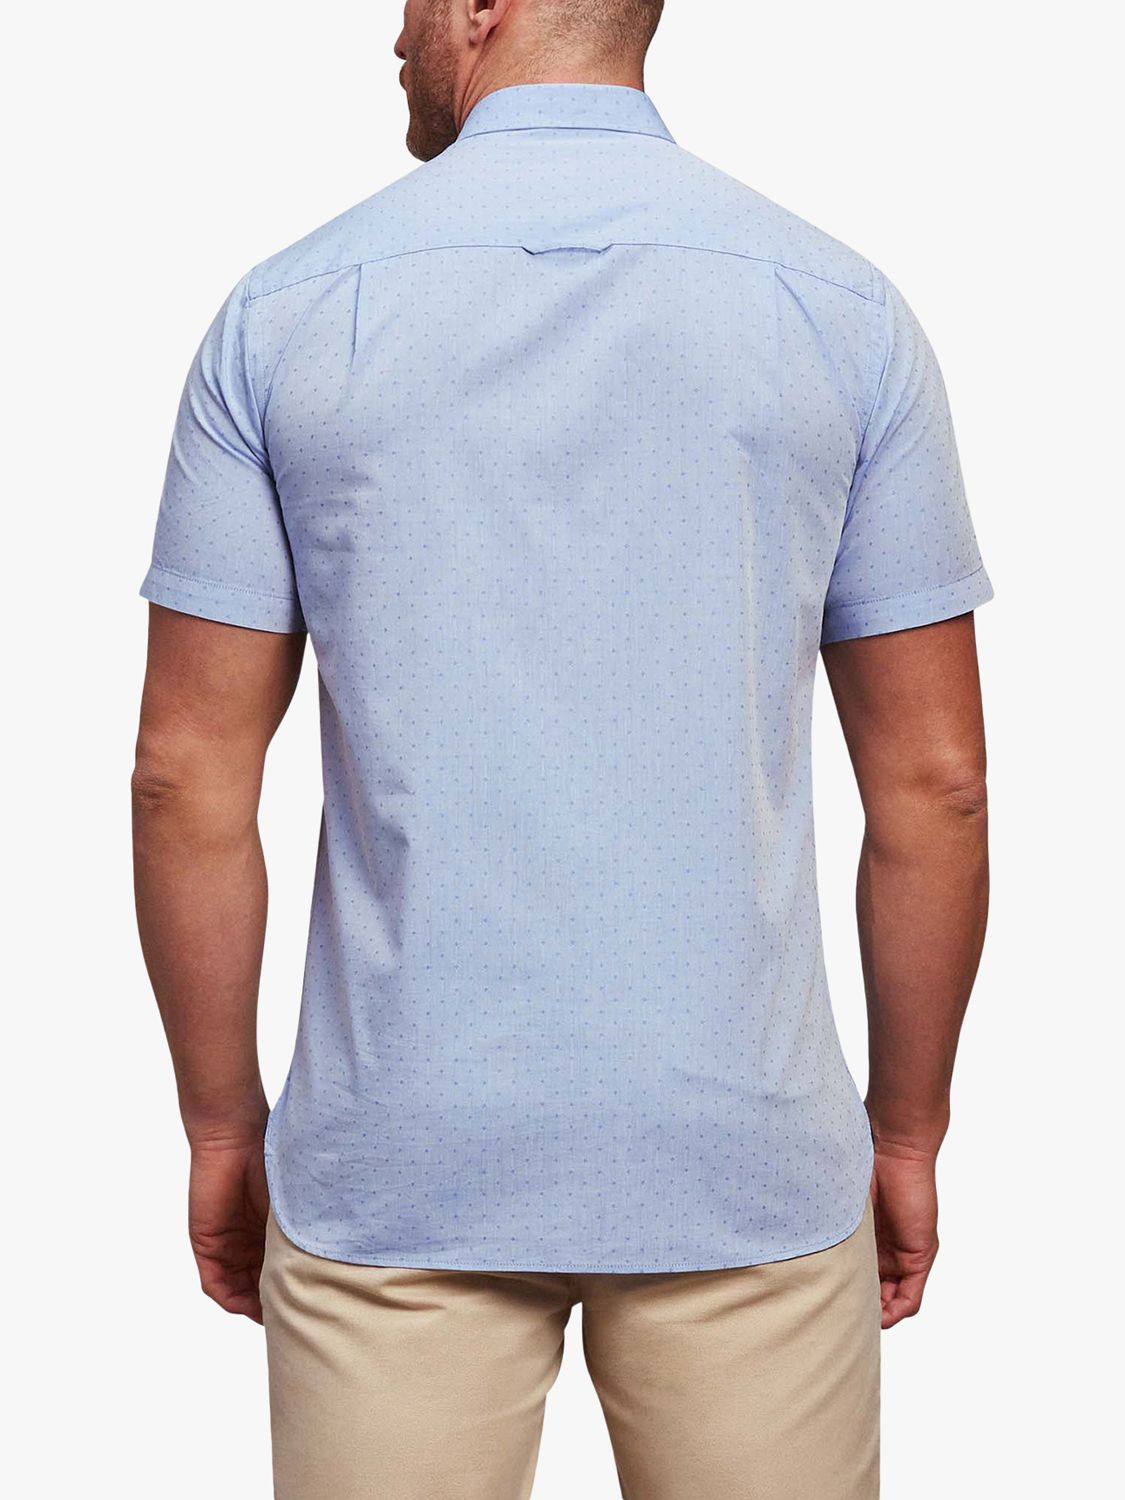 Raging Bull Short Sleeve Dobby Shirt, Blue, S